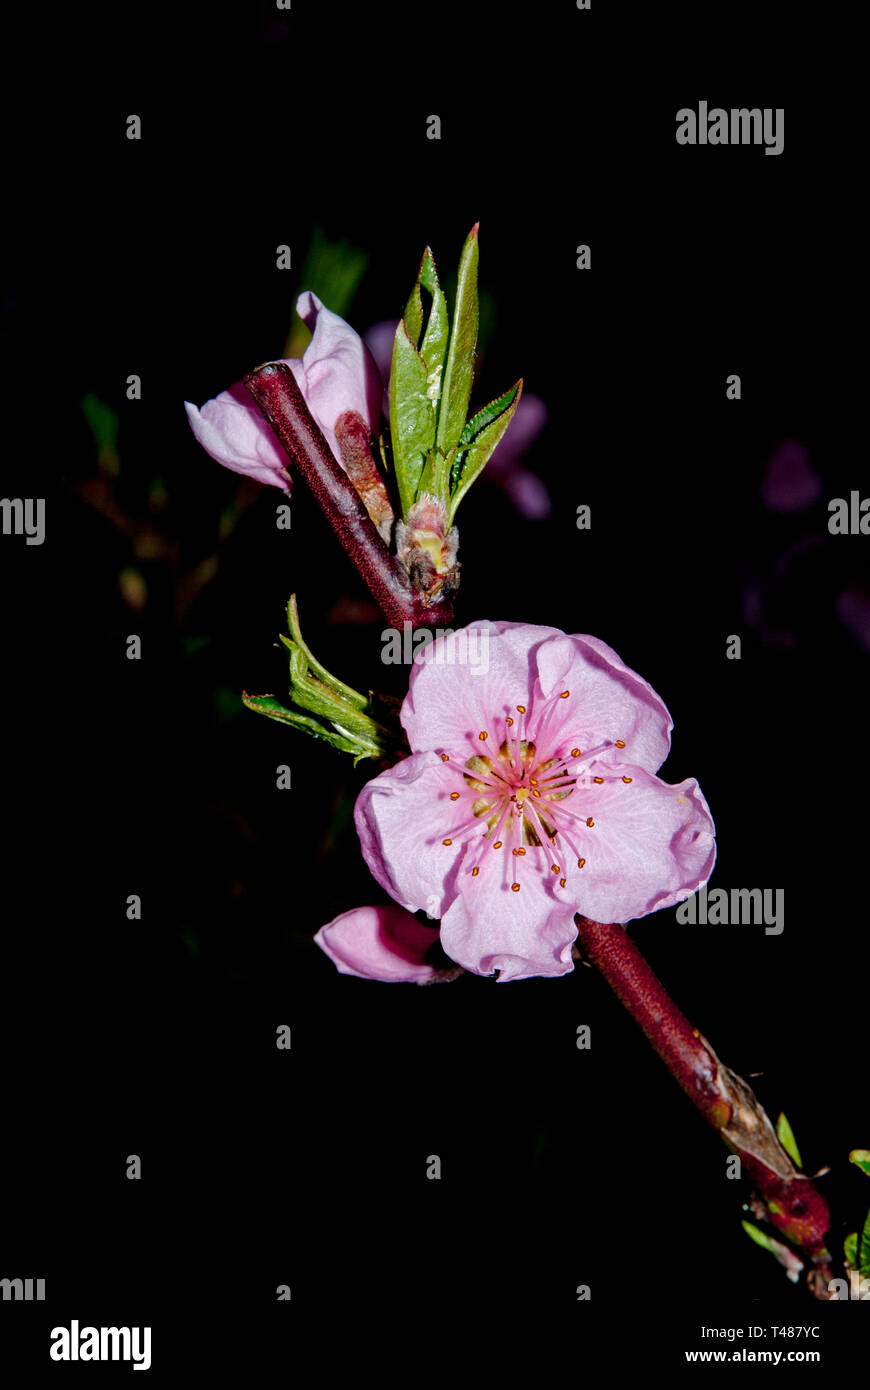 Peach blossom nella notte, Orchard durante la notte Foto Stock